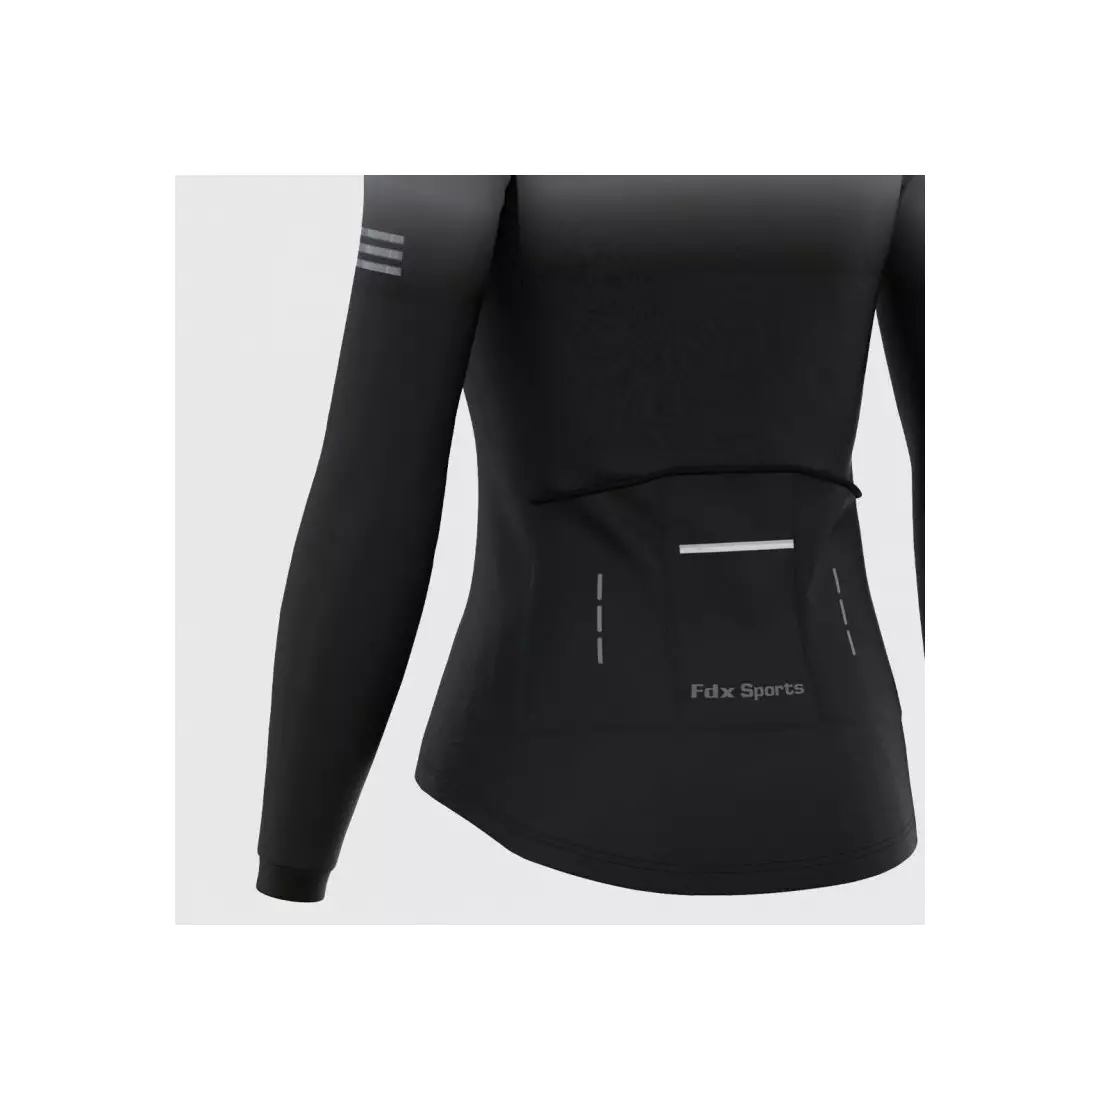 FDX 2100_01 women's insulated bicycle sweatshirt, black-grey 